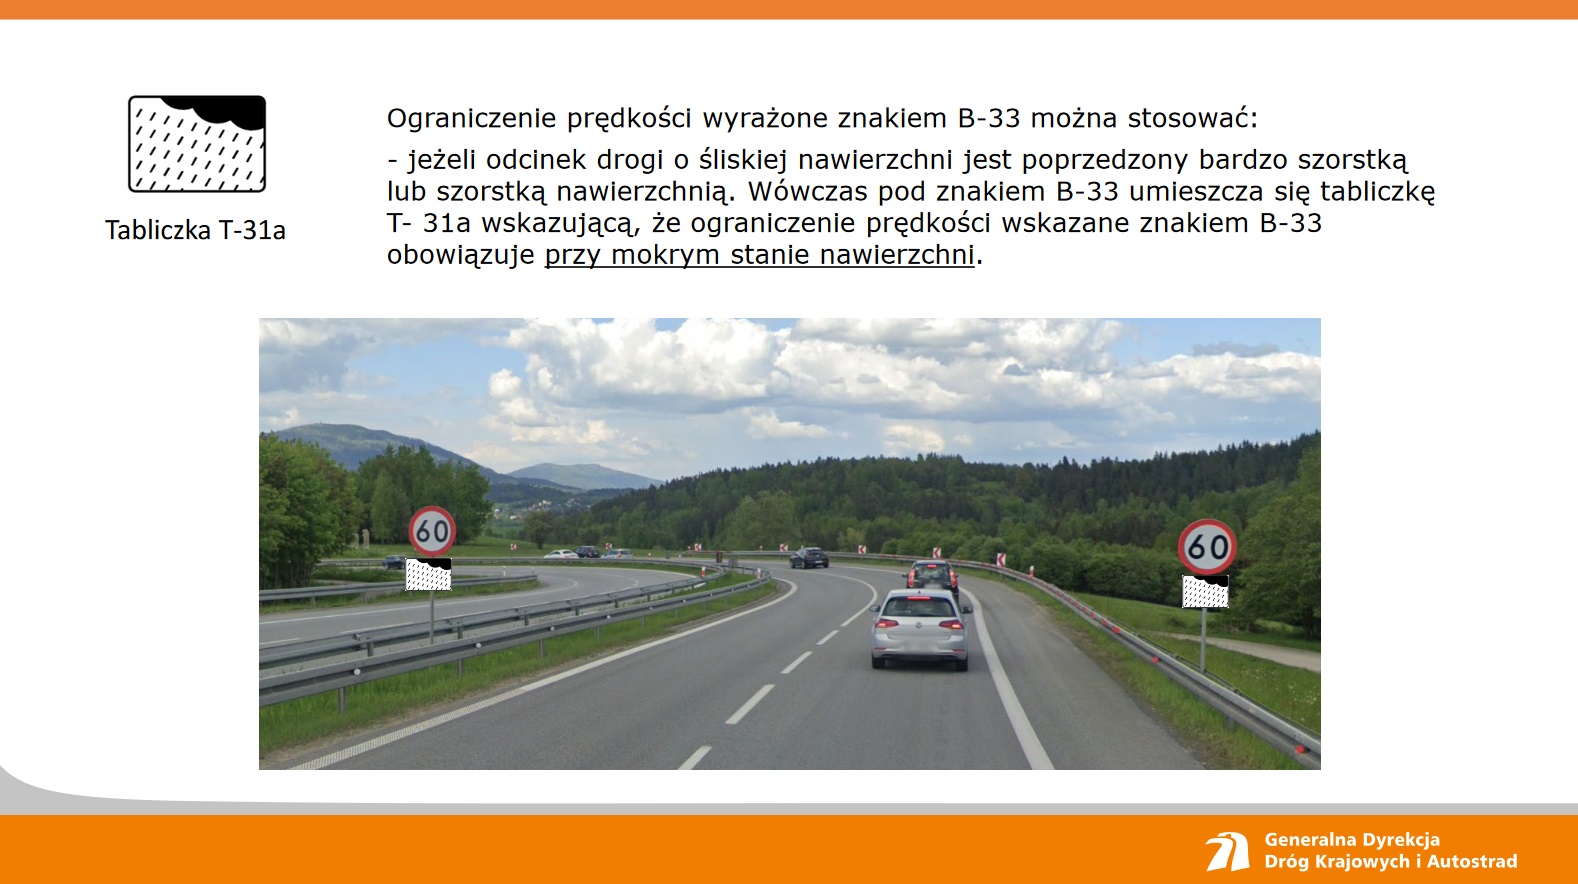 Nowy znak przy polskich drogach